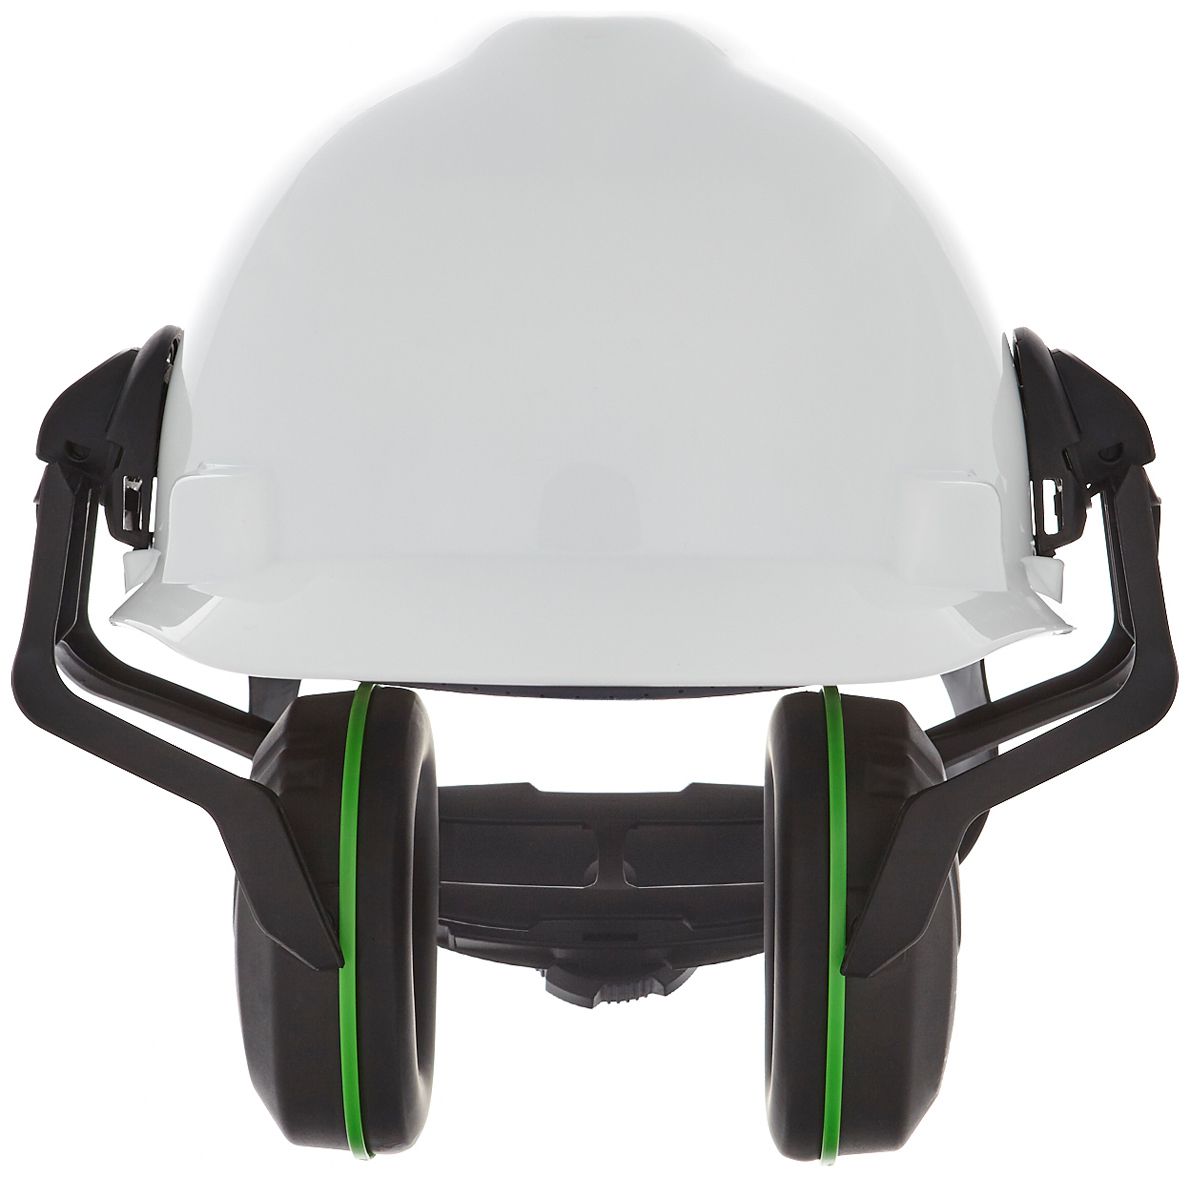 MSA V-Gard Helm-Kapselgehörschutz - Gehörschutz-Kapseln mit Halterung für die Helmmontage - SNR: 28 bis 36 dB